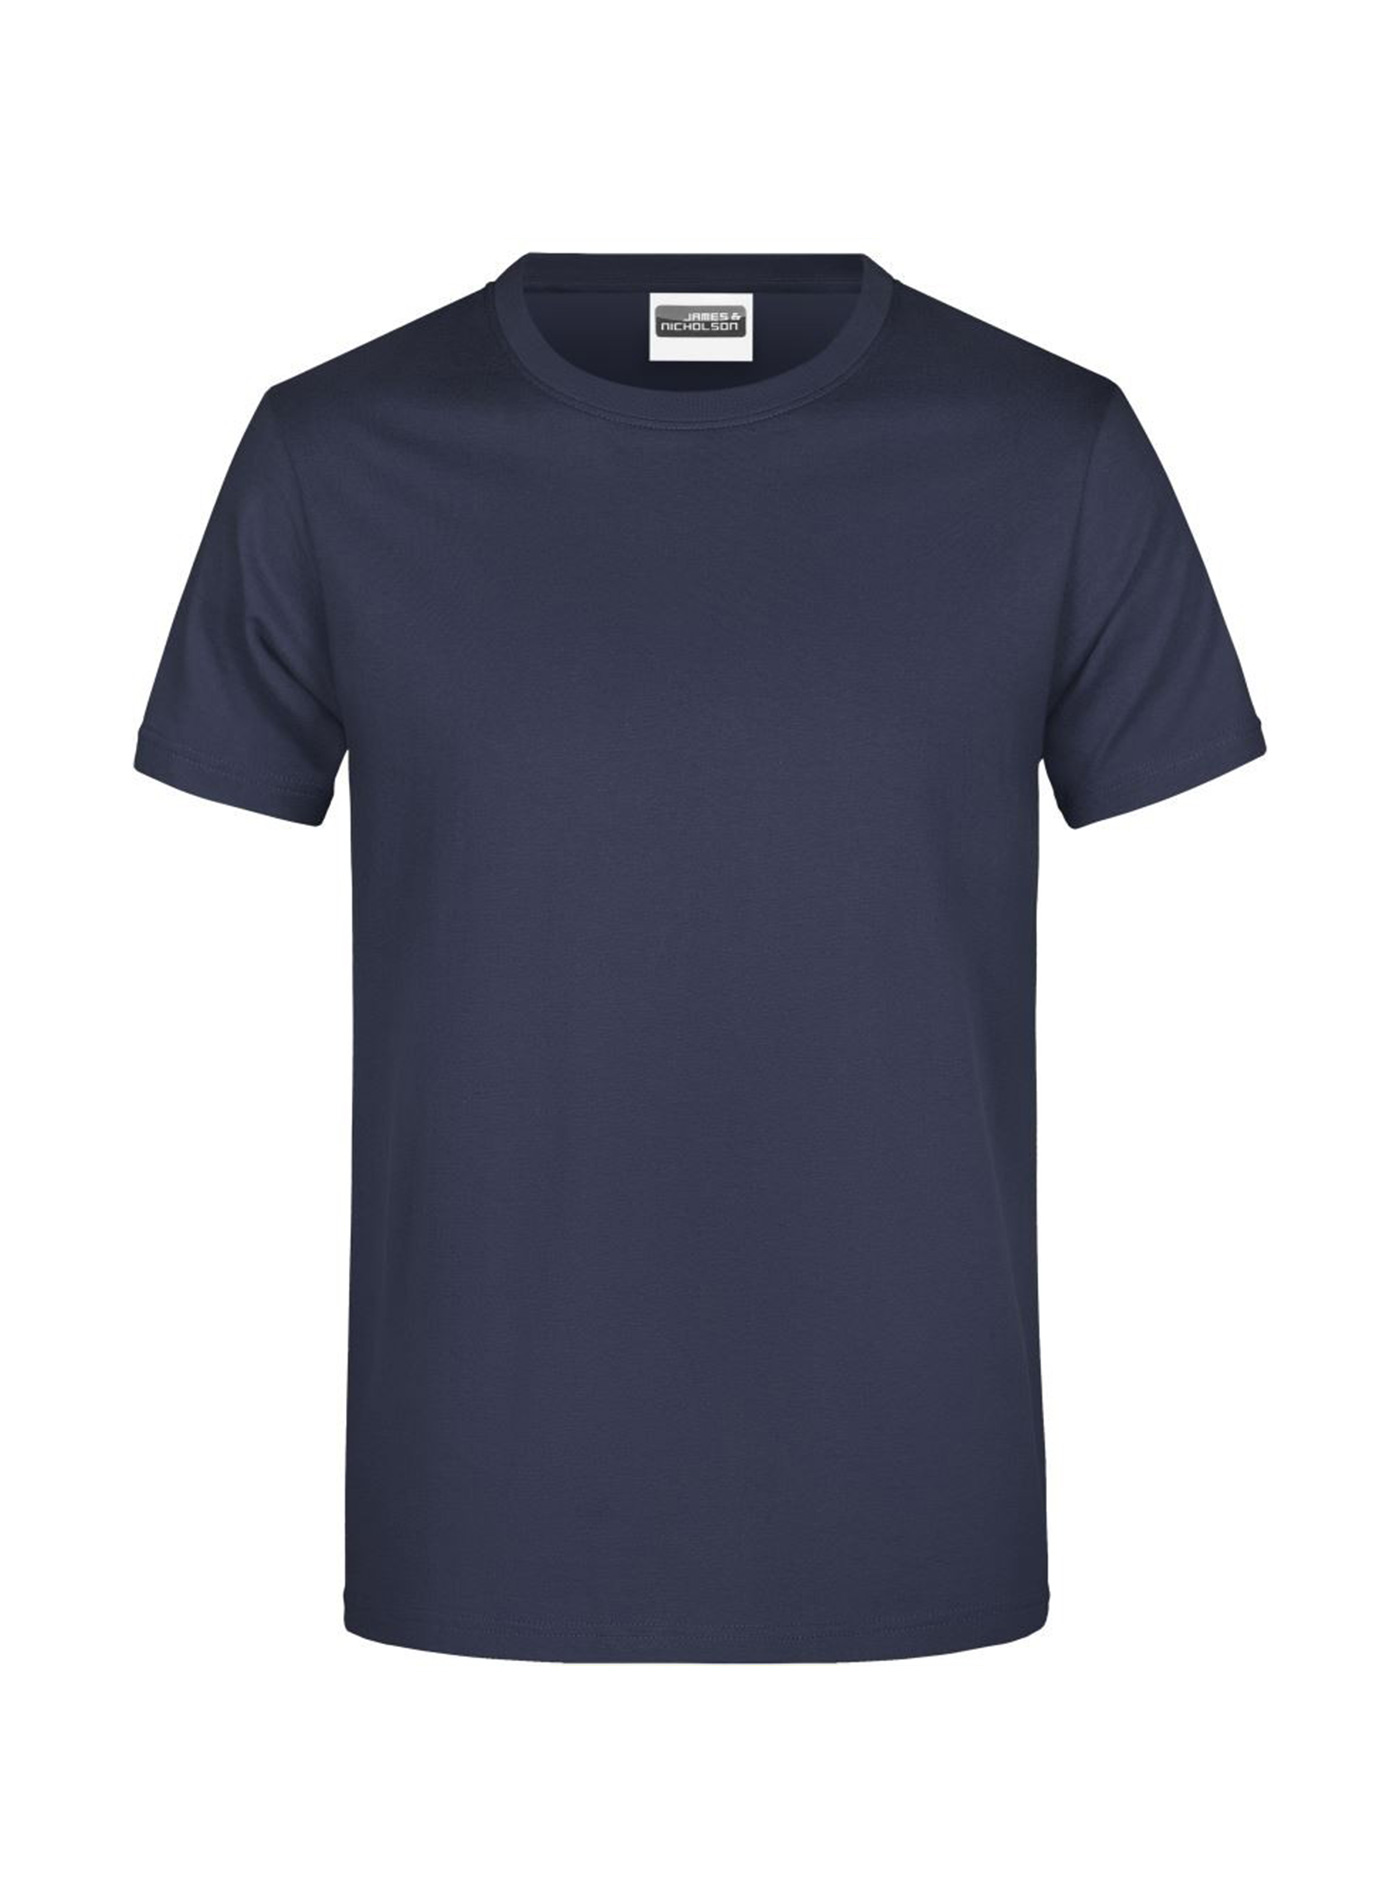 Pánské tričko James & Nicholson Heavy - Námořní modrá M